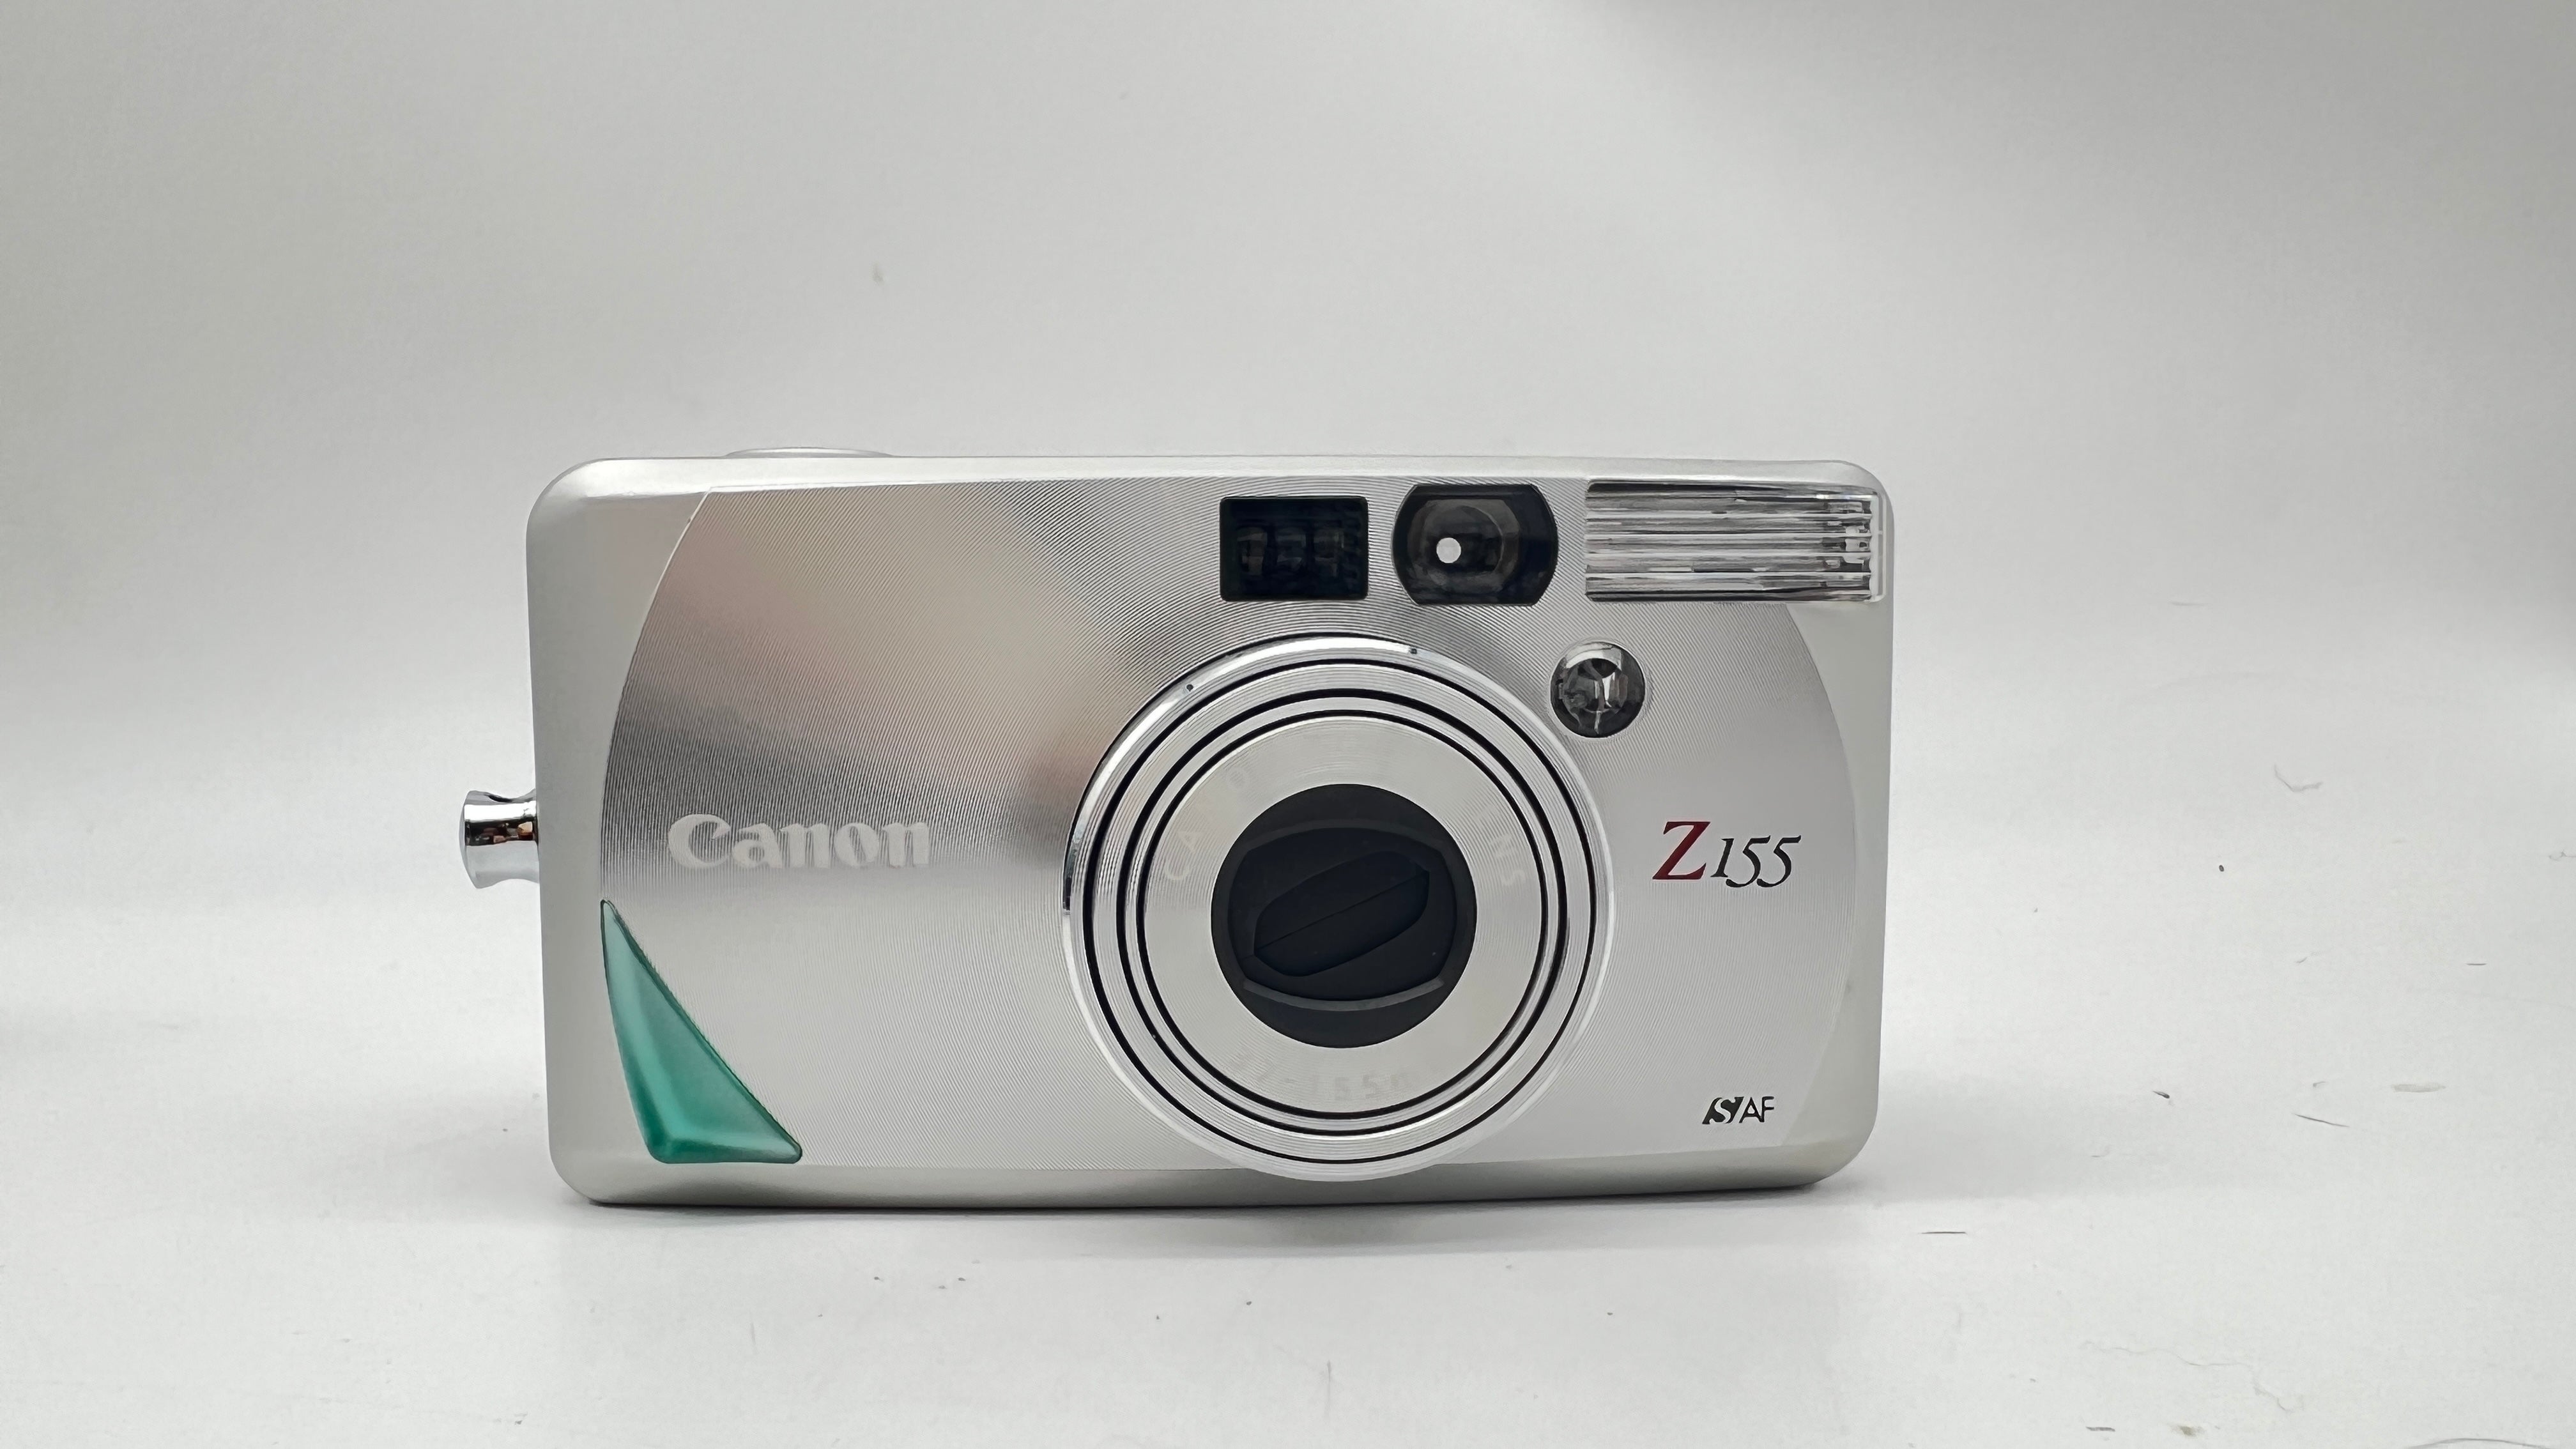 Canon Z155